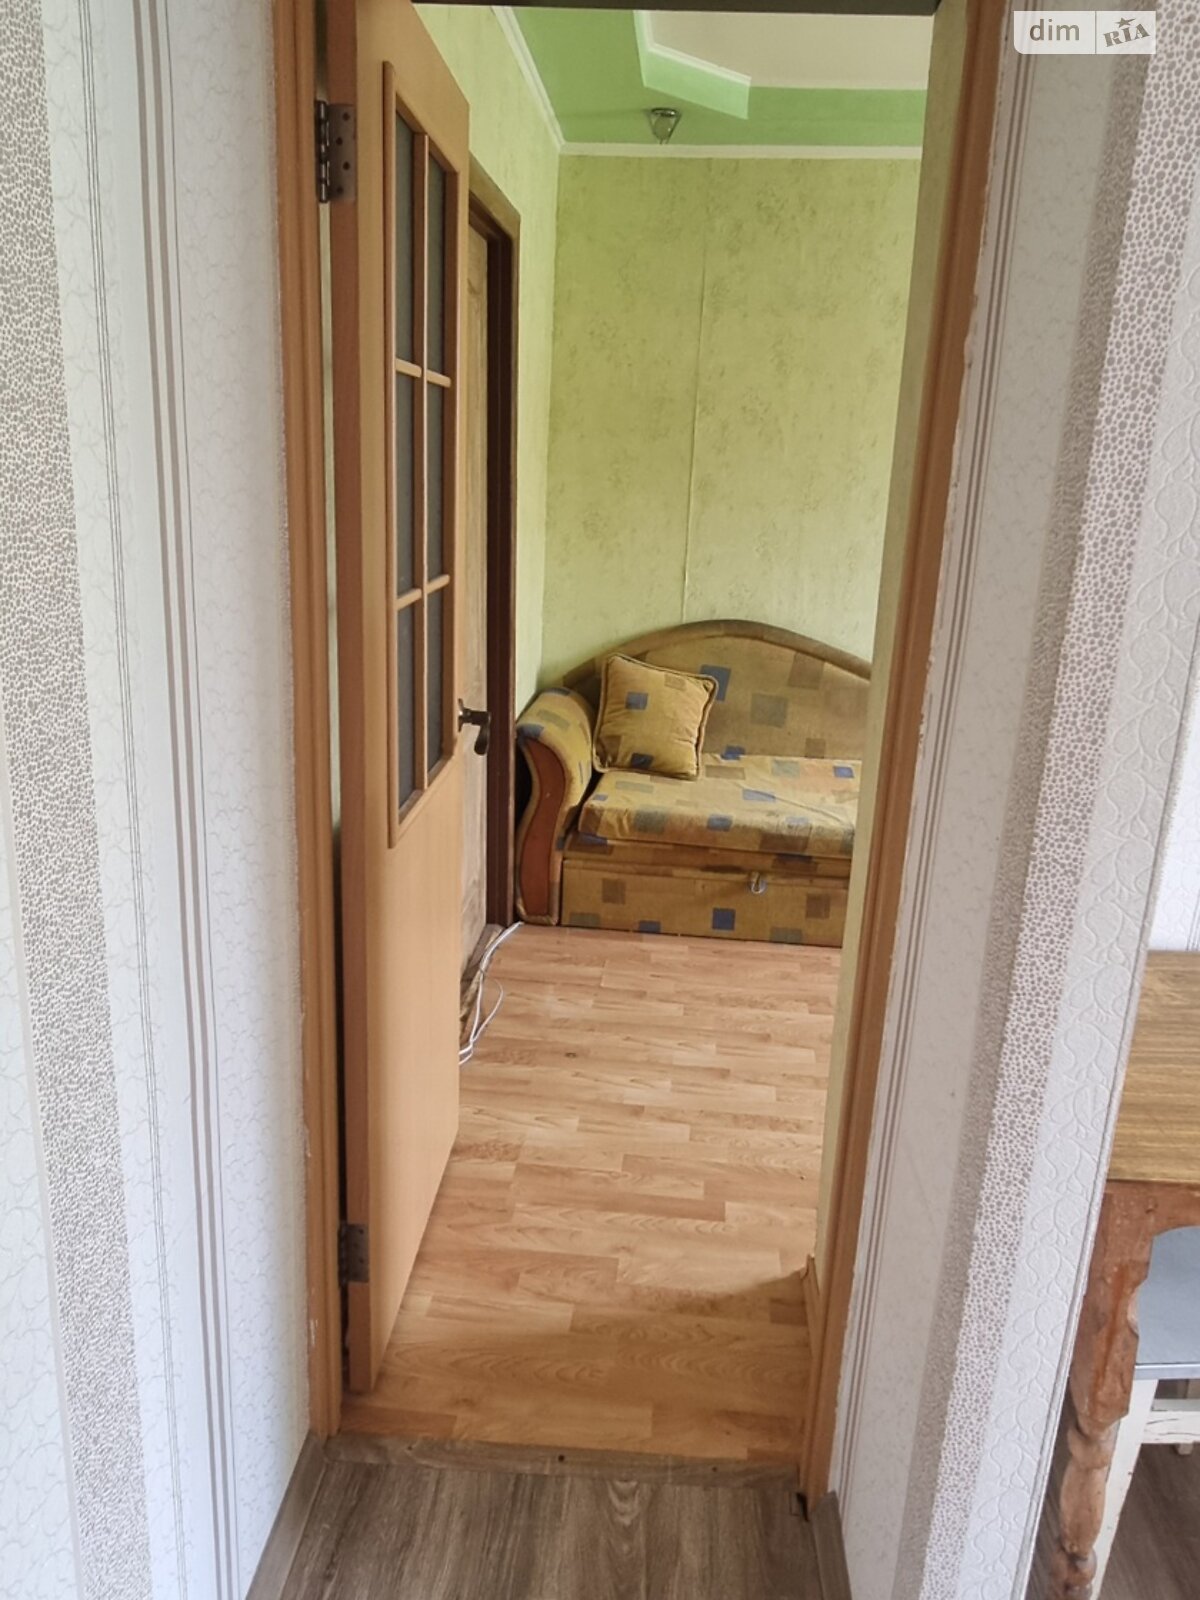 Кімната в Харкові на вул. Власенка 12 в районі Новожаново на продаж фото 1